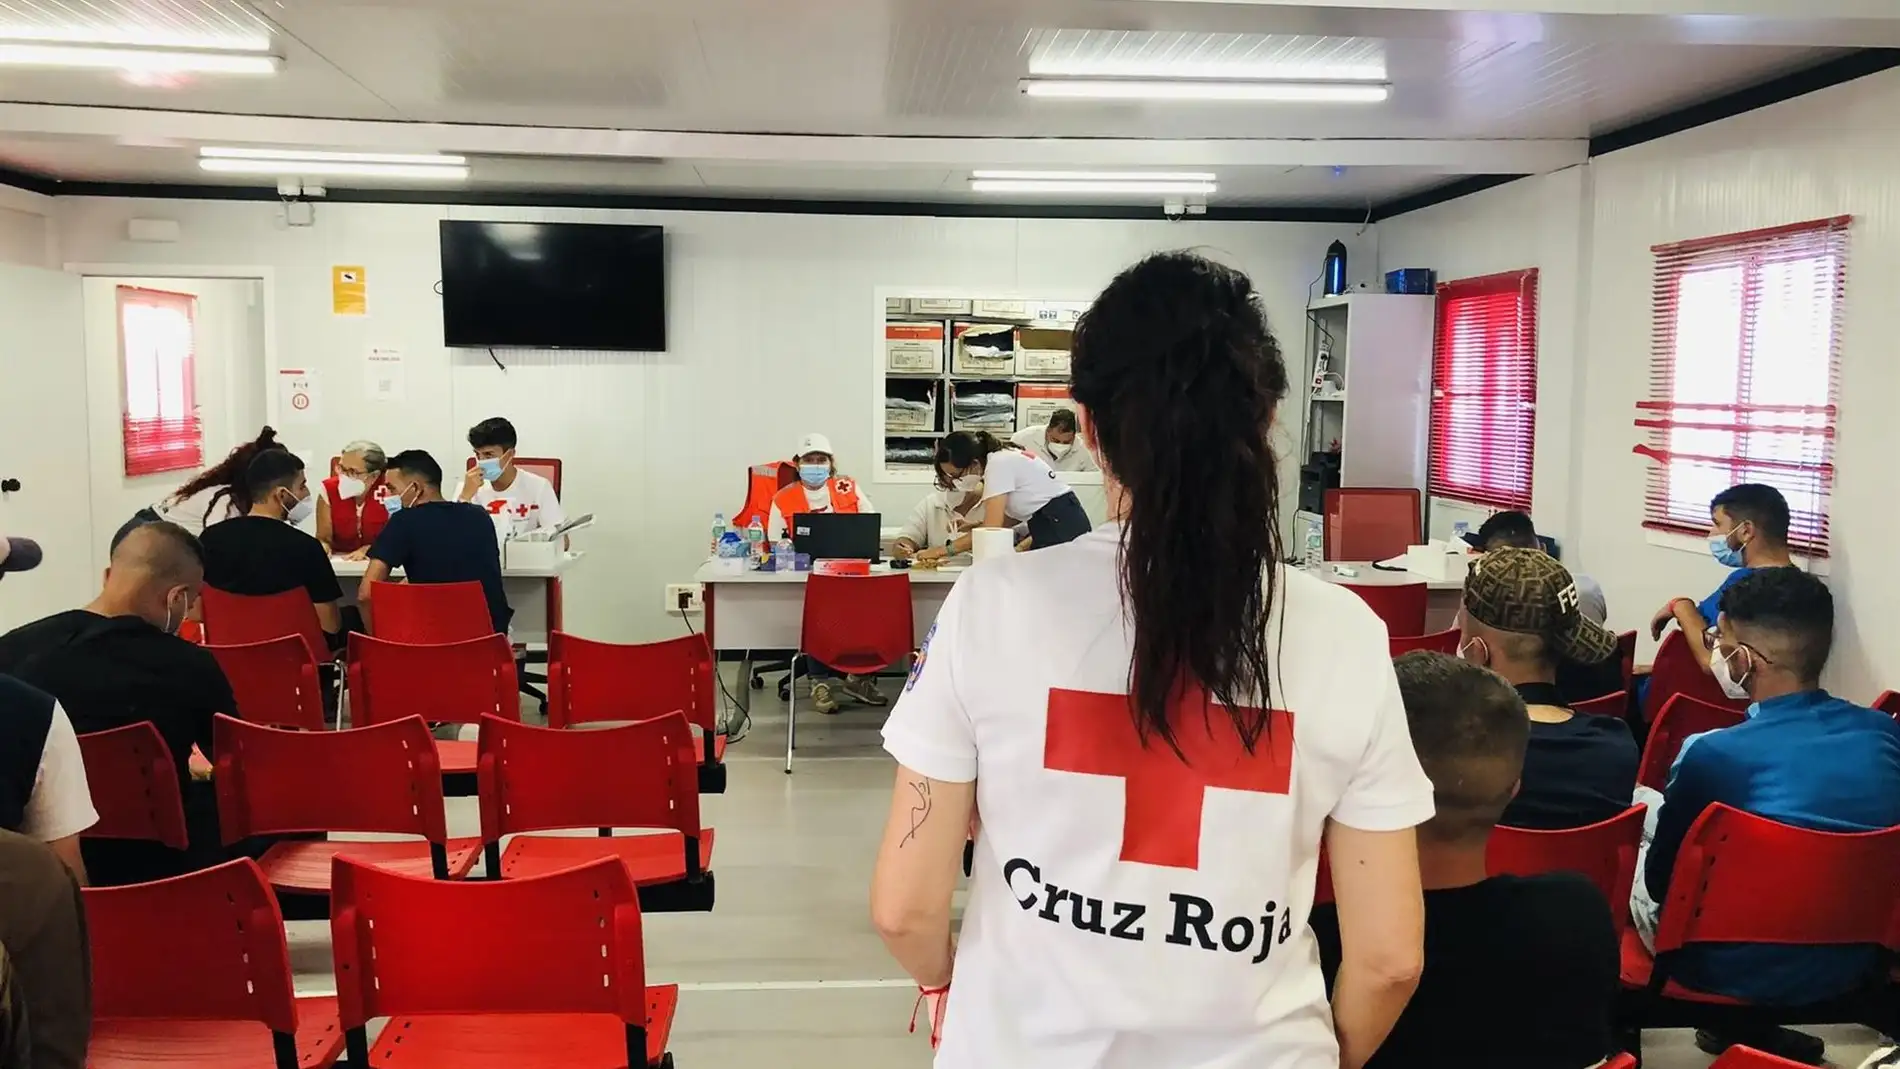 Efectivos de Cruz Roja atienden a ocupantes rescatados de una patera en Almería en una imagen de archivo. - CRUZ ROJA -